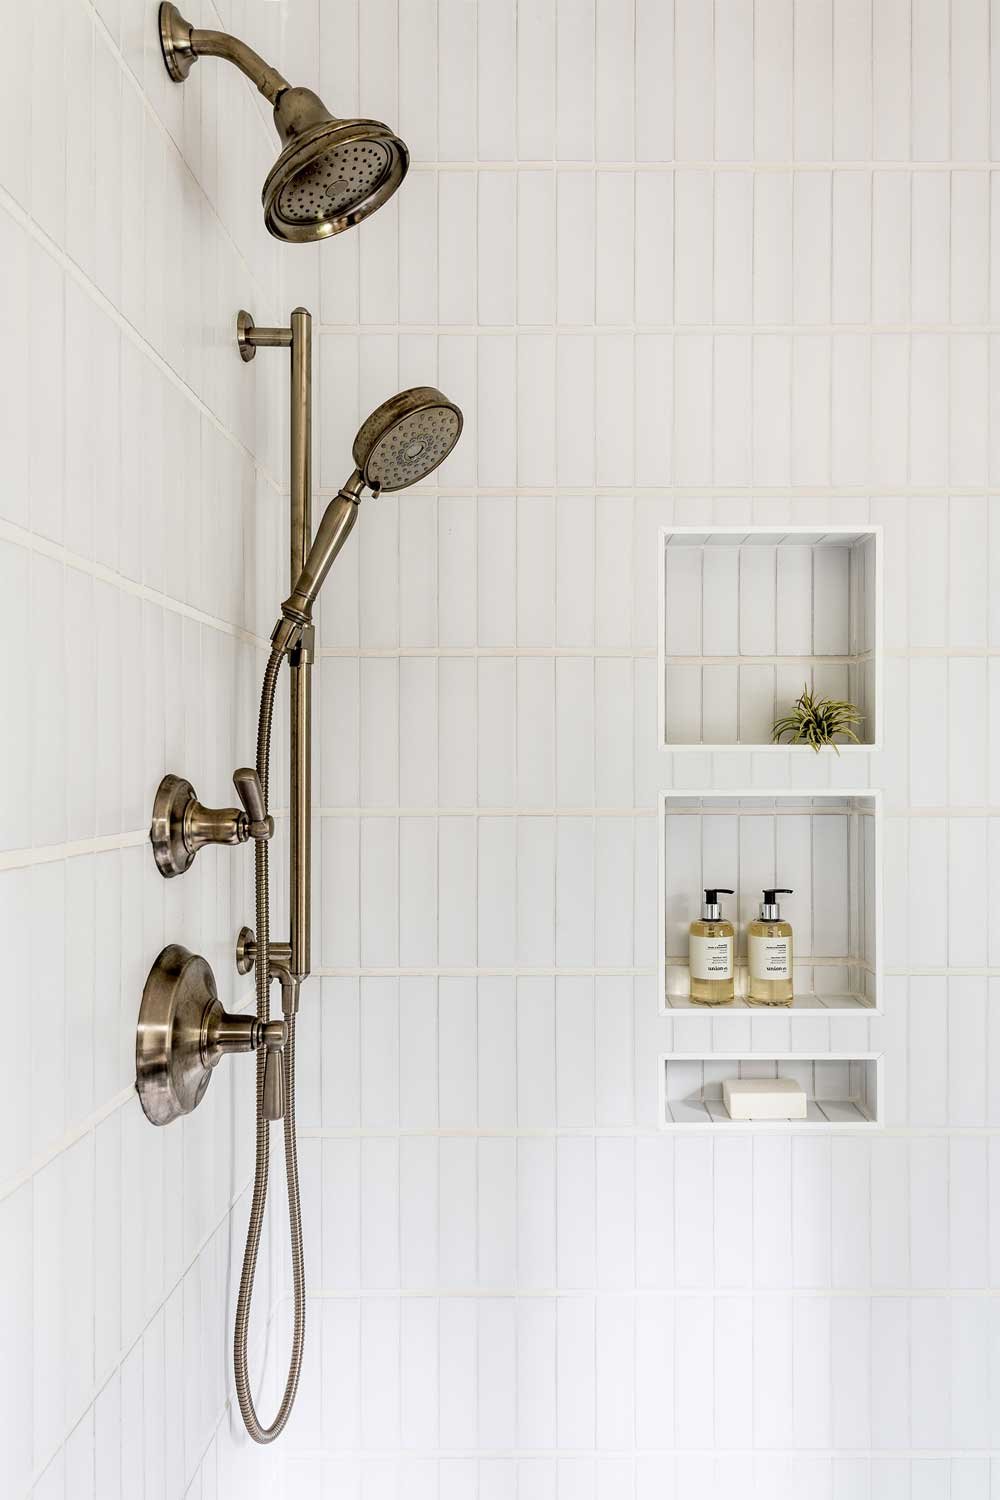 Best Shower Storage Ideas to Shop Now